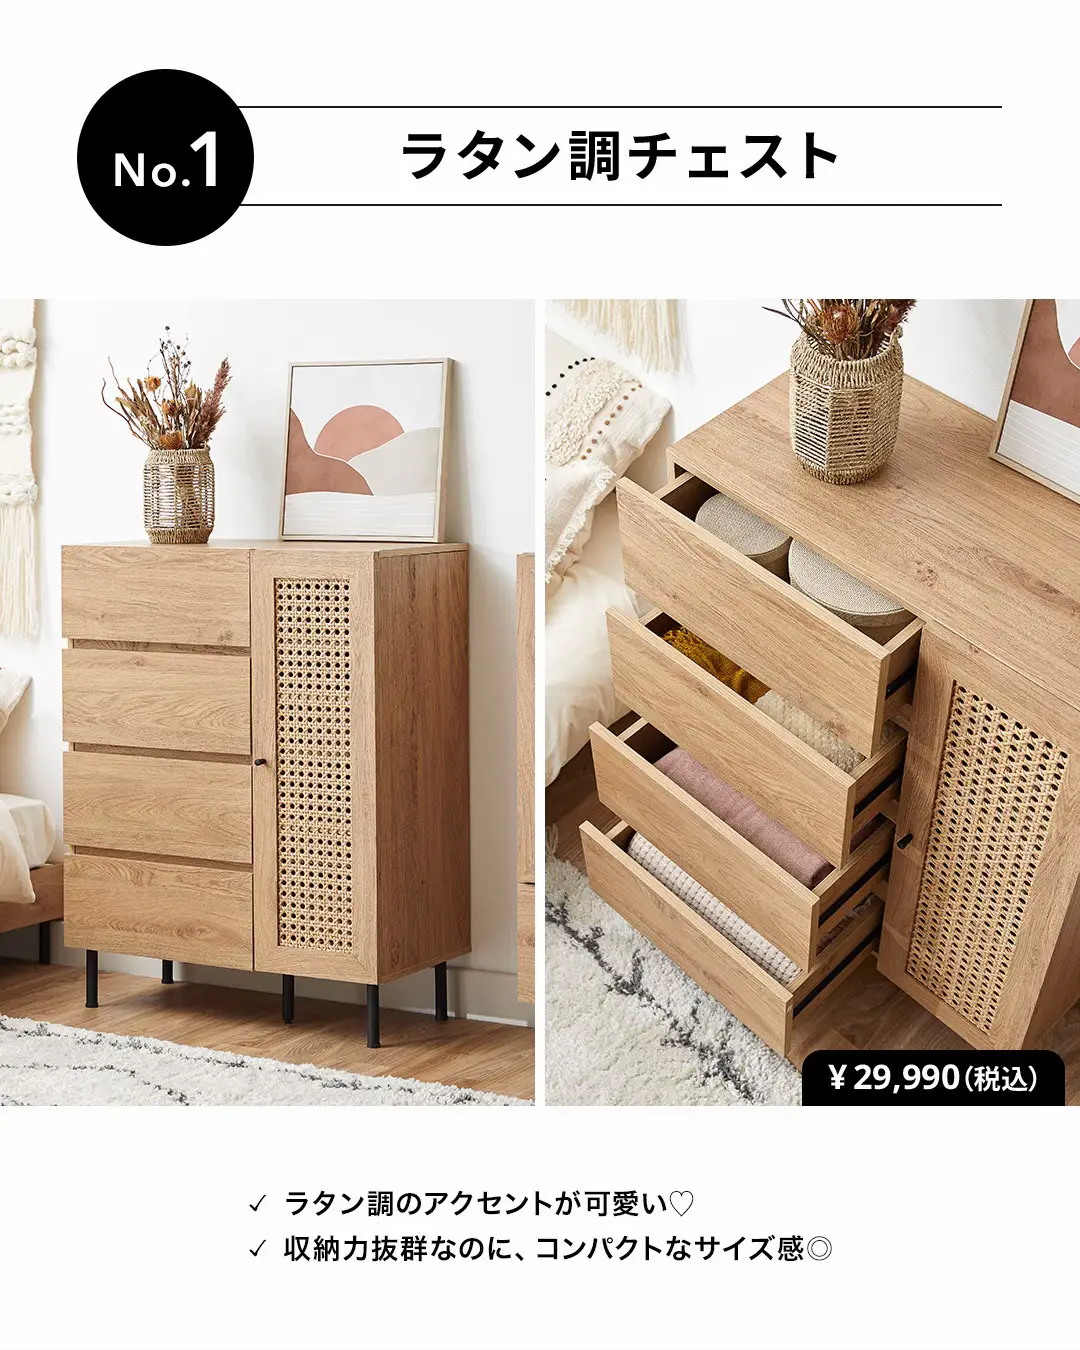 日本新品 インテリア おしゃれ おすすめ 家具用品 可愛い オシャレな